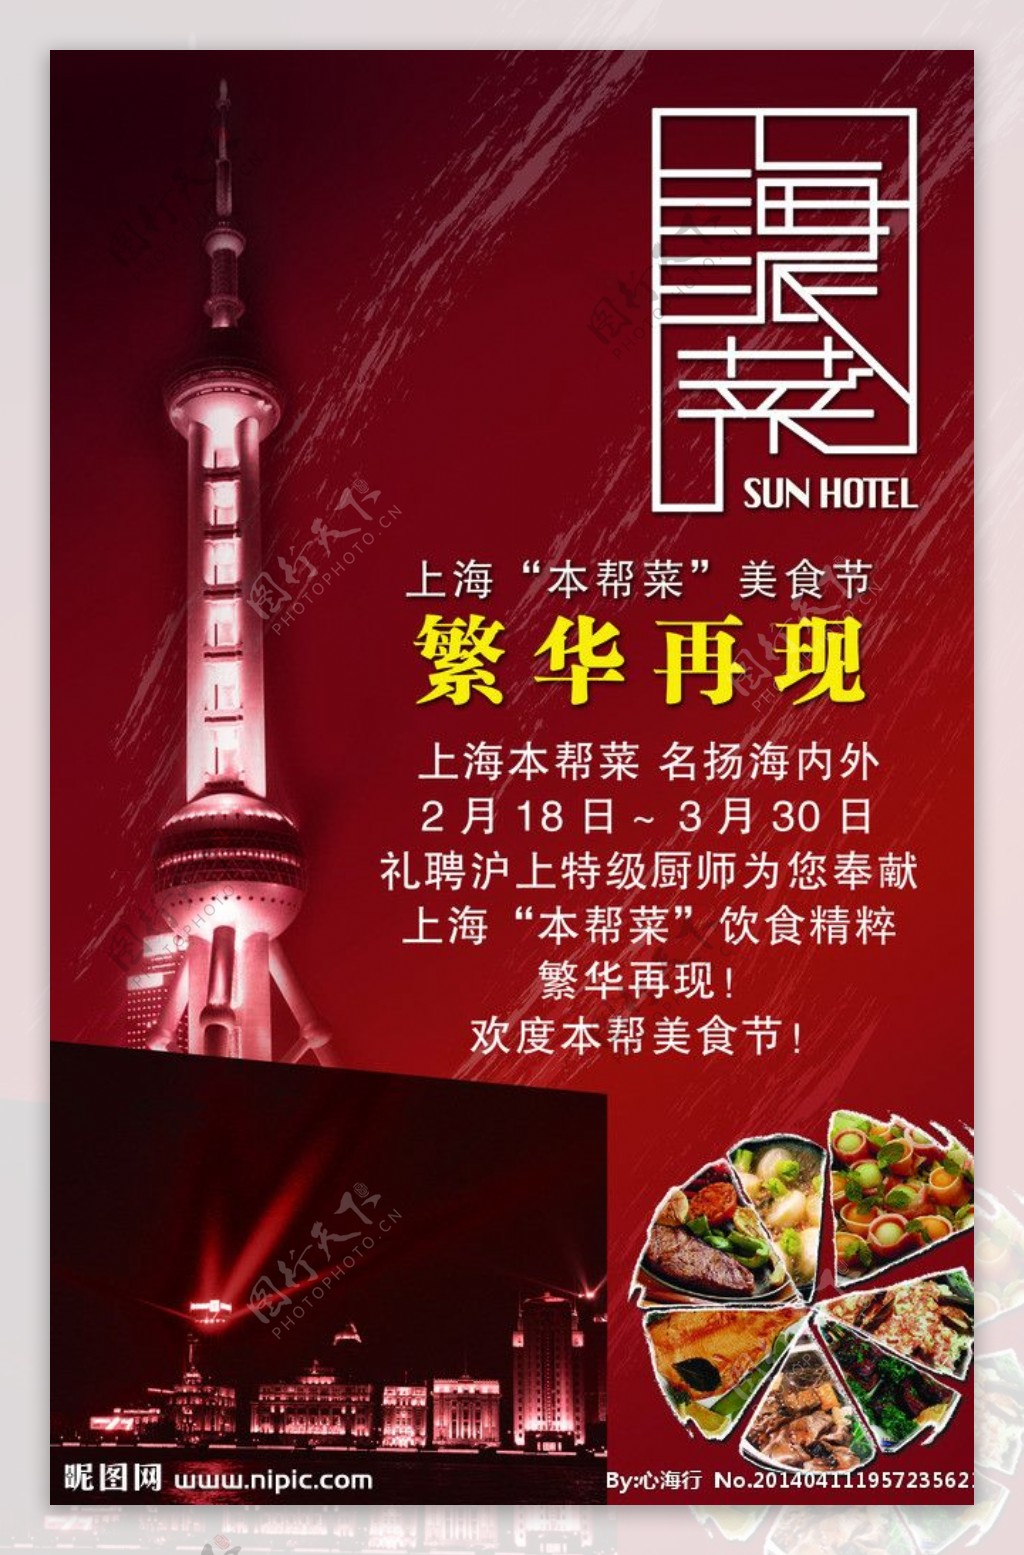 上海菜馆美食节图片